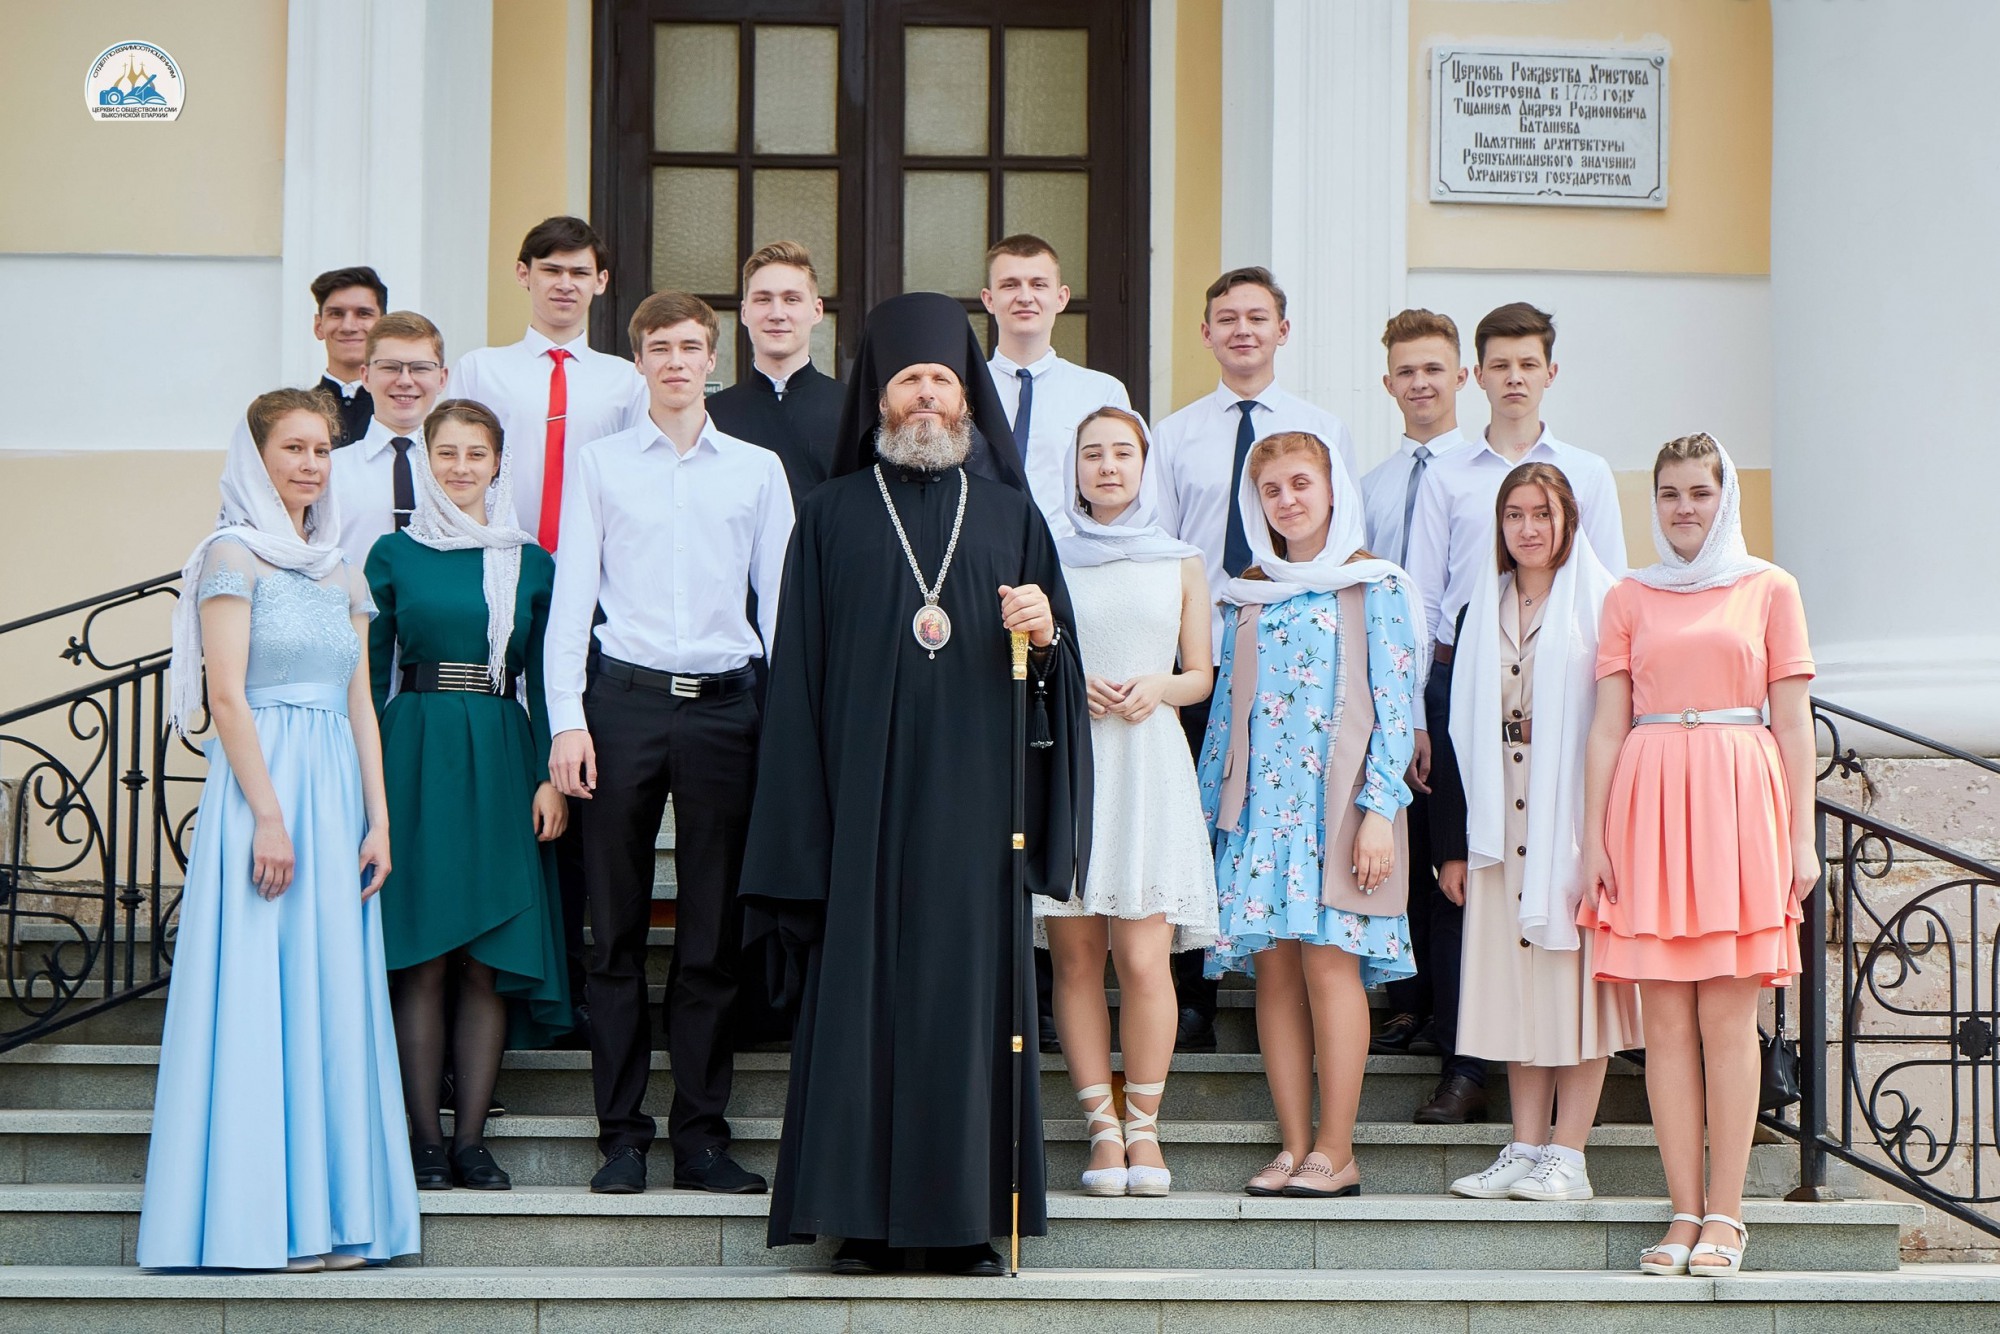 Пятнадцать студентов получили богословское образование